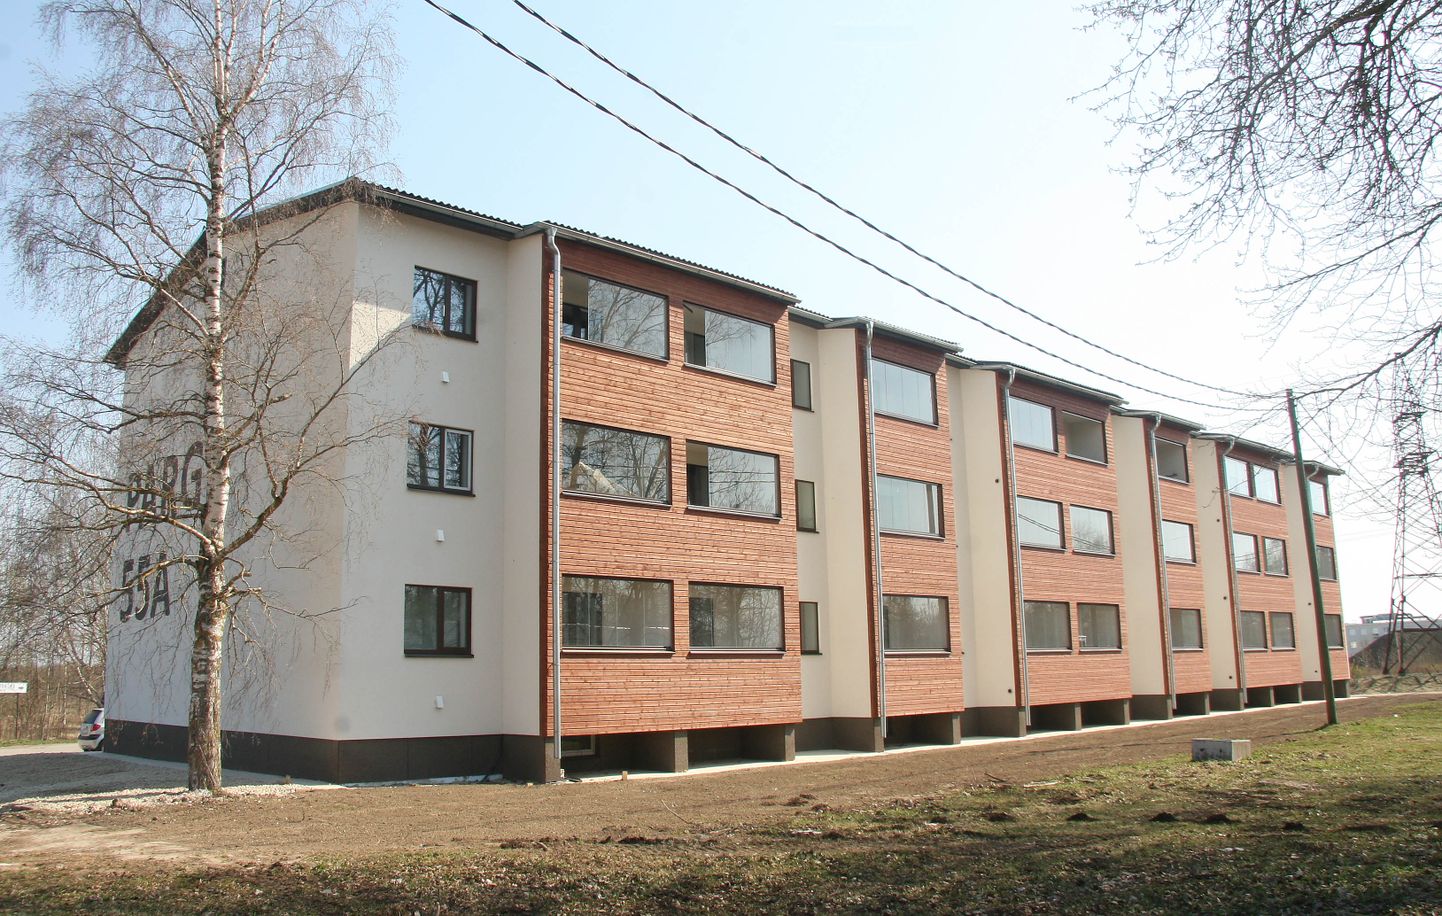 Многоэтажный дом №55а по улице Парги в Йыхви обрел новый облик прошлым летом.